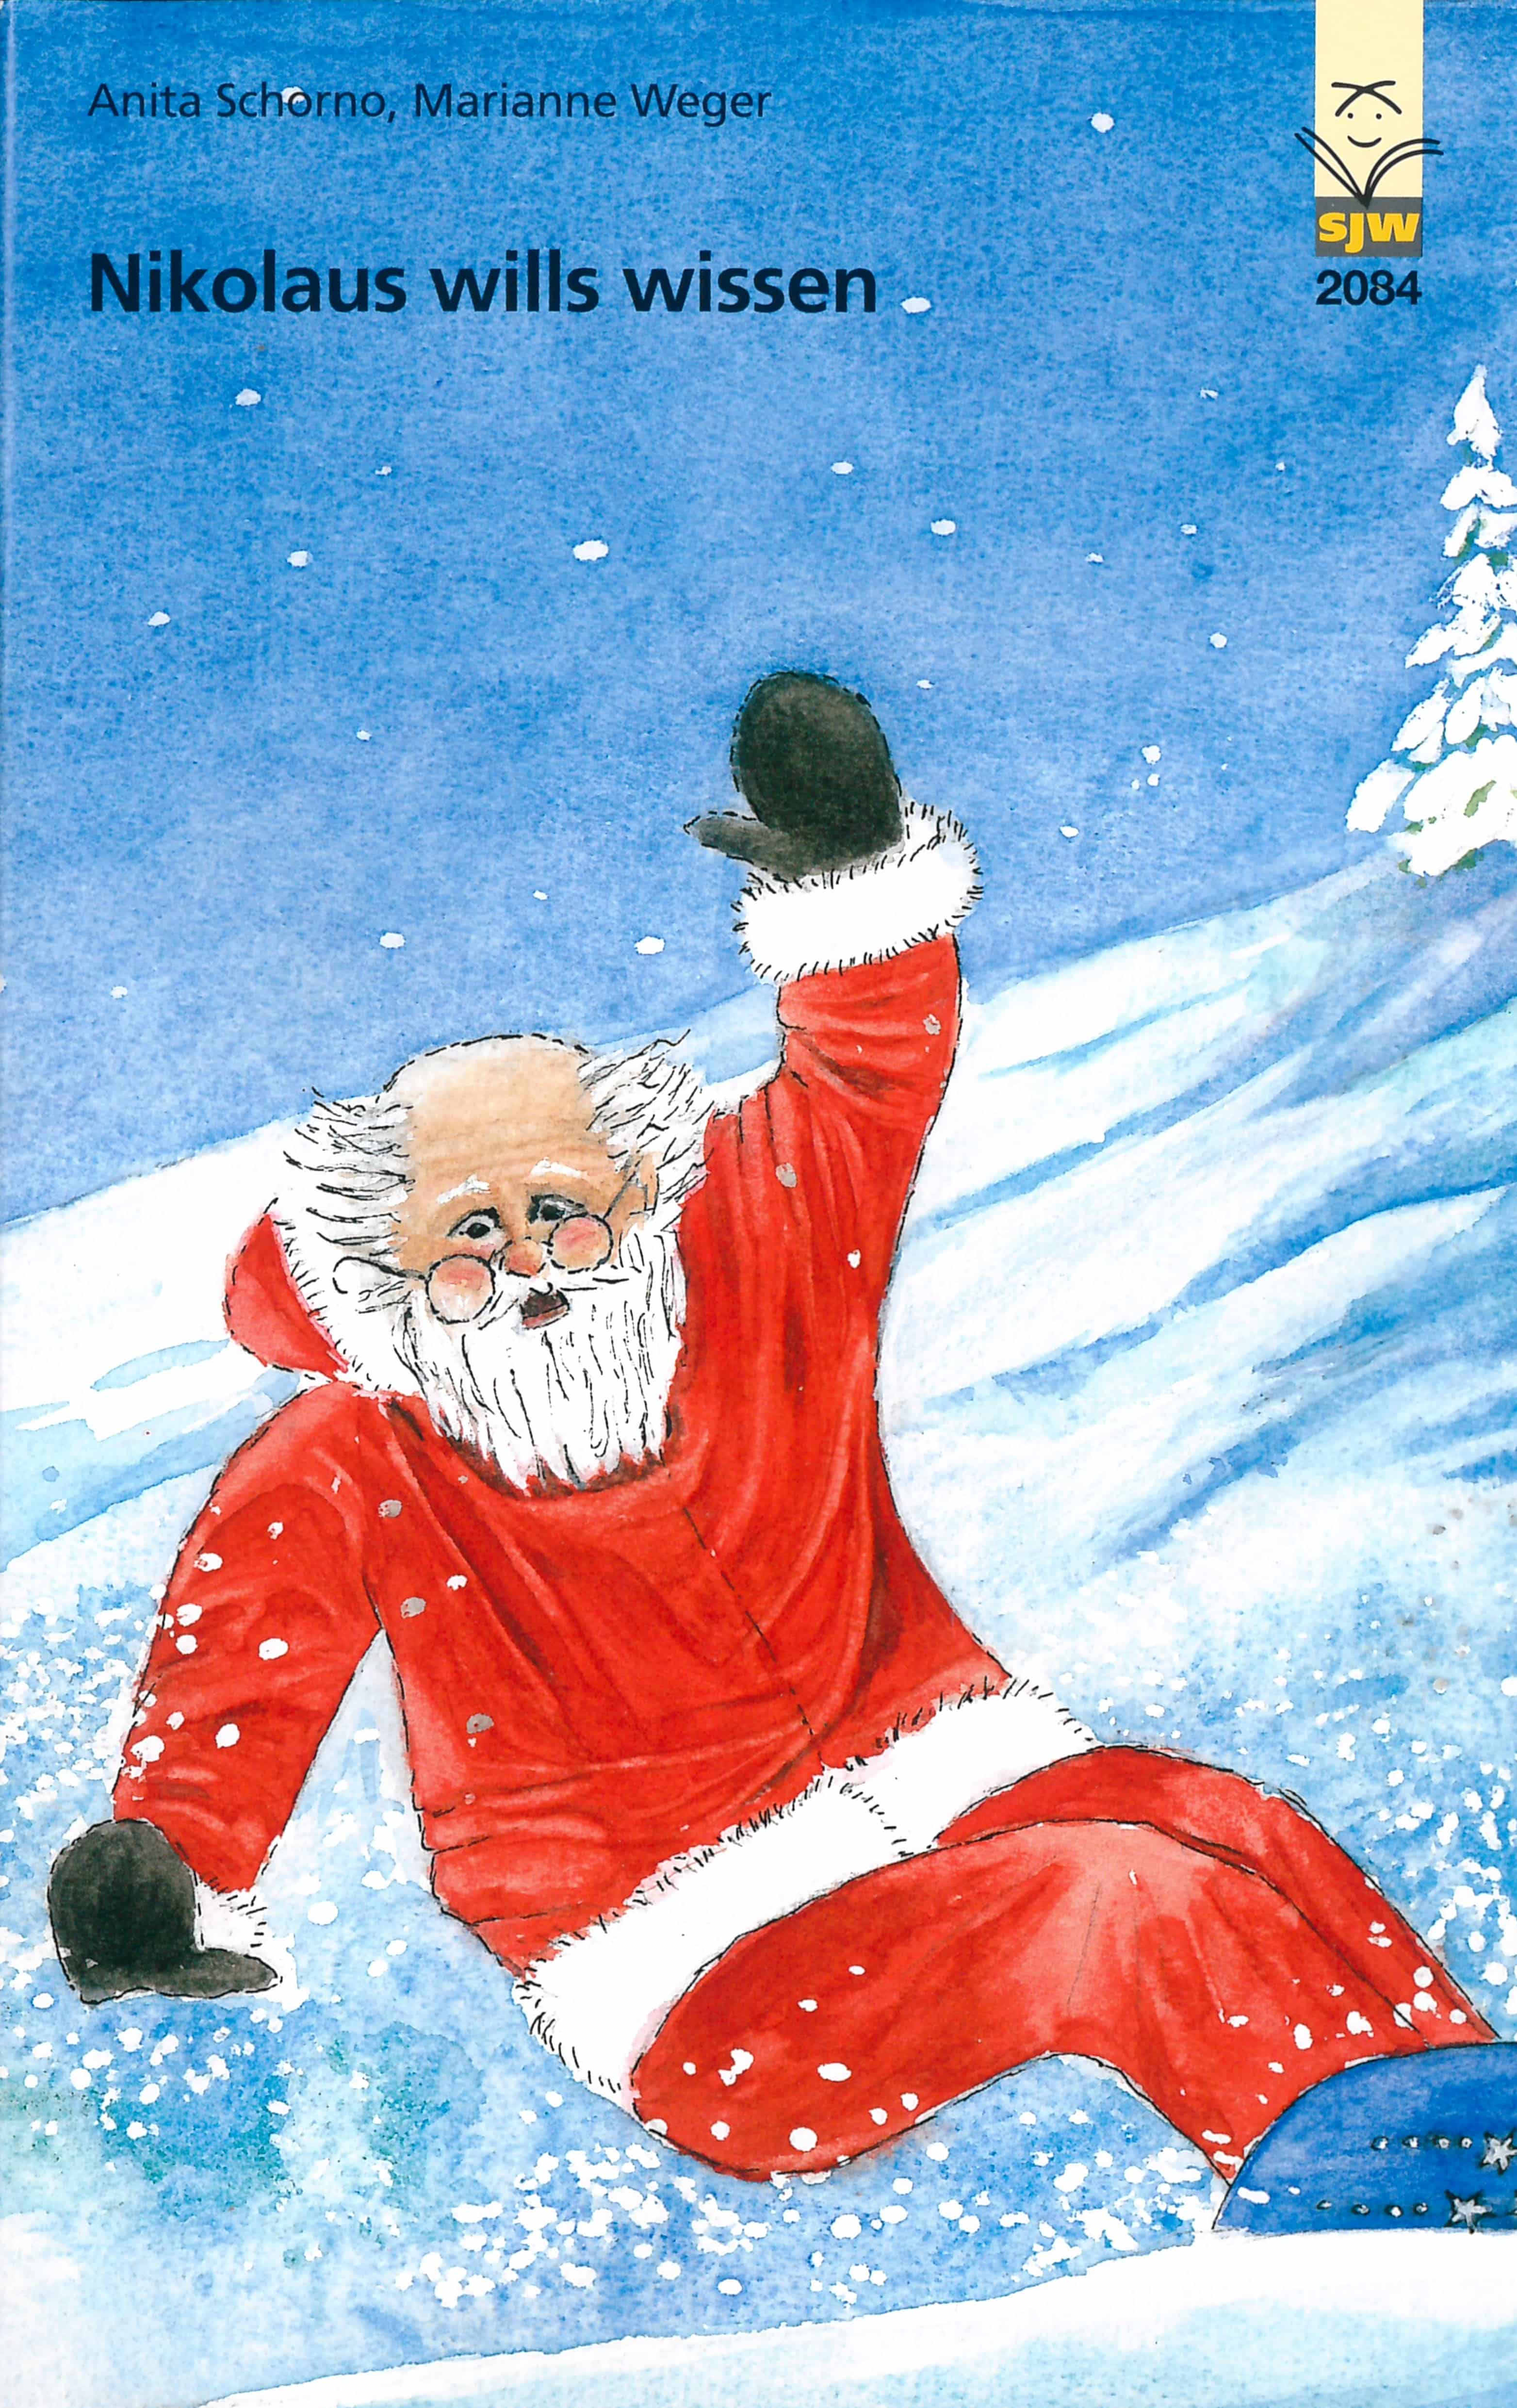 Nikolaus wills wissen, ein Kinderbuch von Anita Schorno, Illustration von Marianne Weger, SJW Verlag, Weihnachten